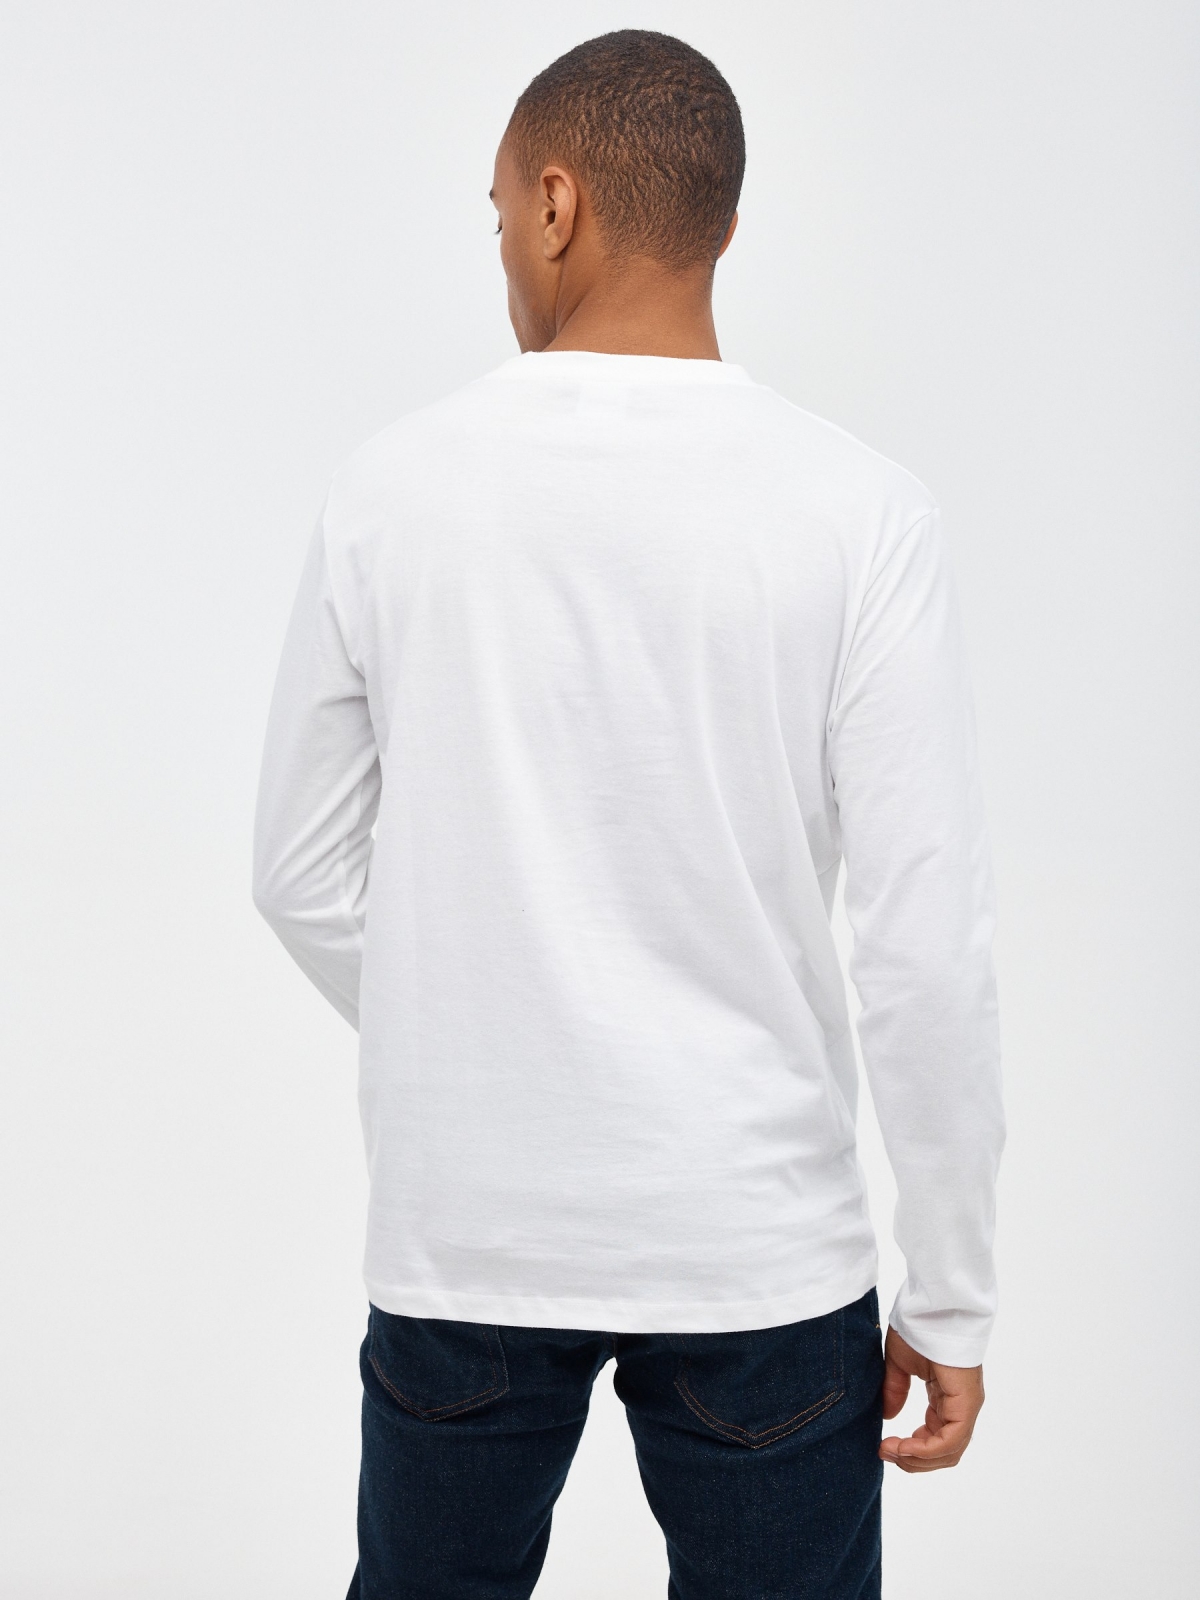 Demon Slaye print t-shirt white middle back view